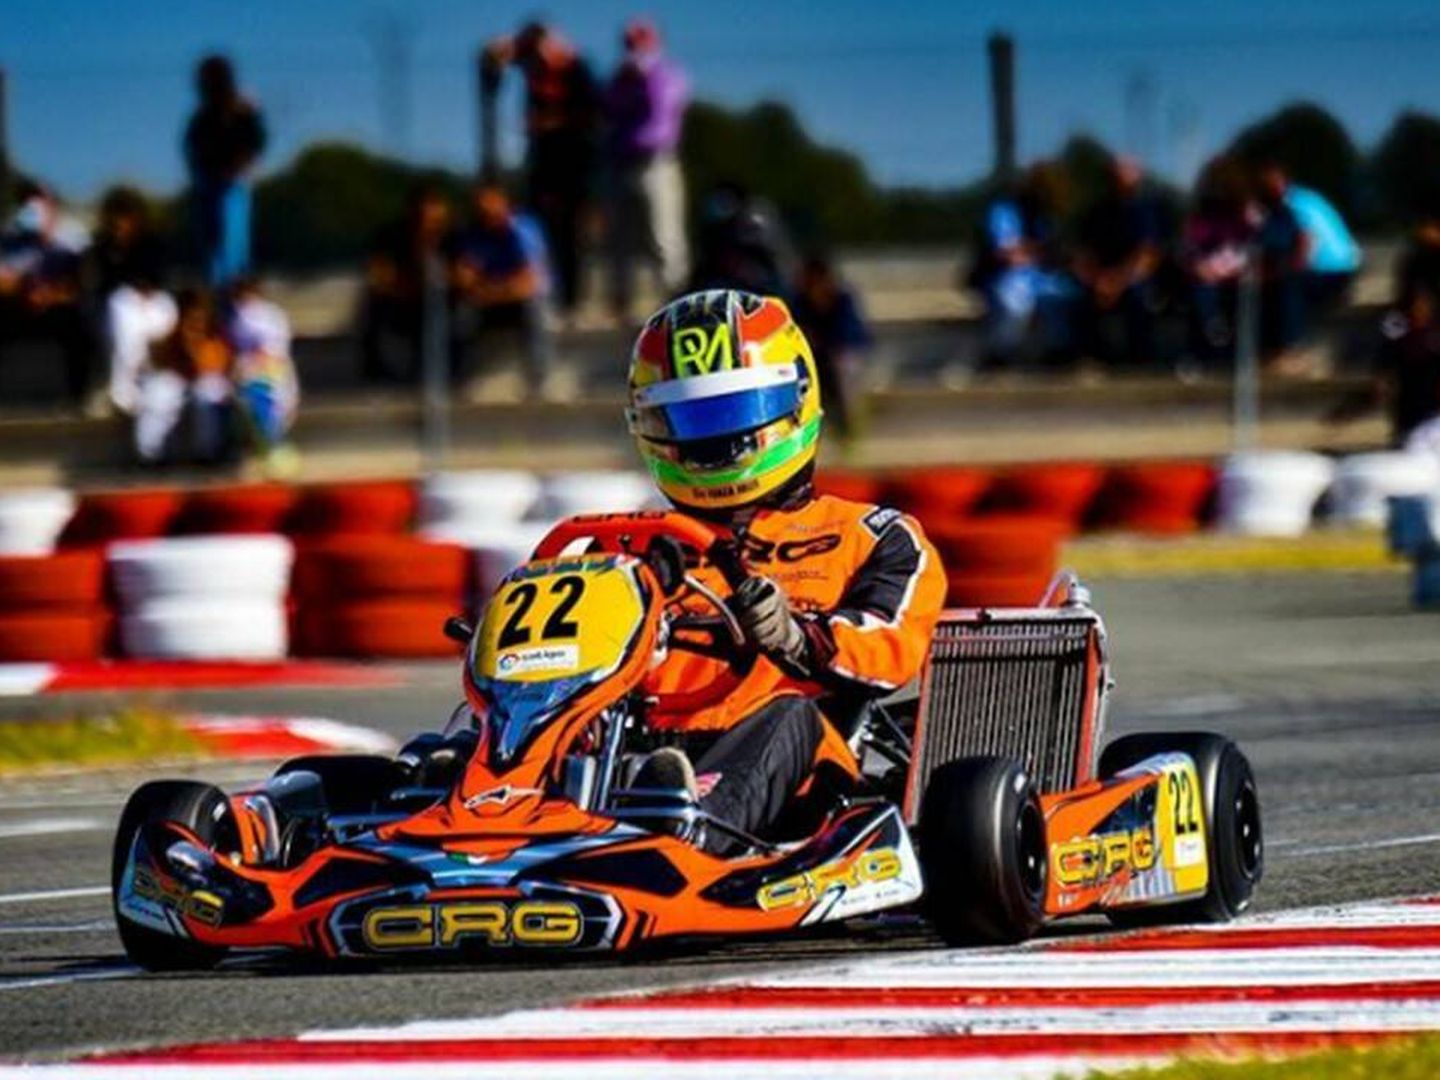 Roberto entrena en karting para preparar sus carreras de F2. (RM Instagram)